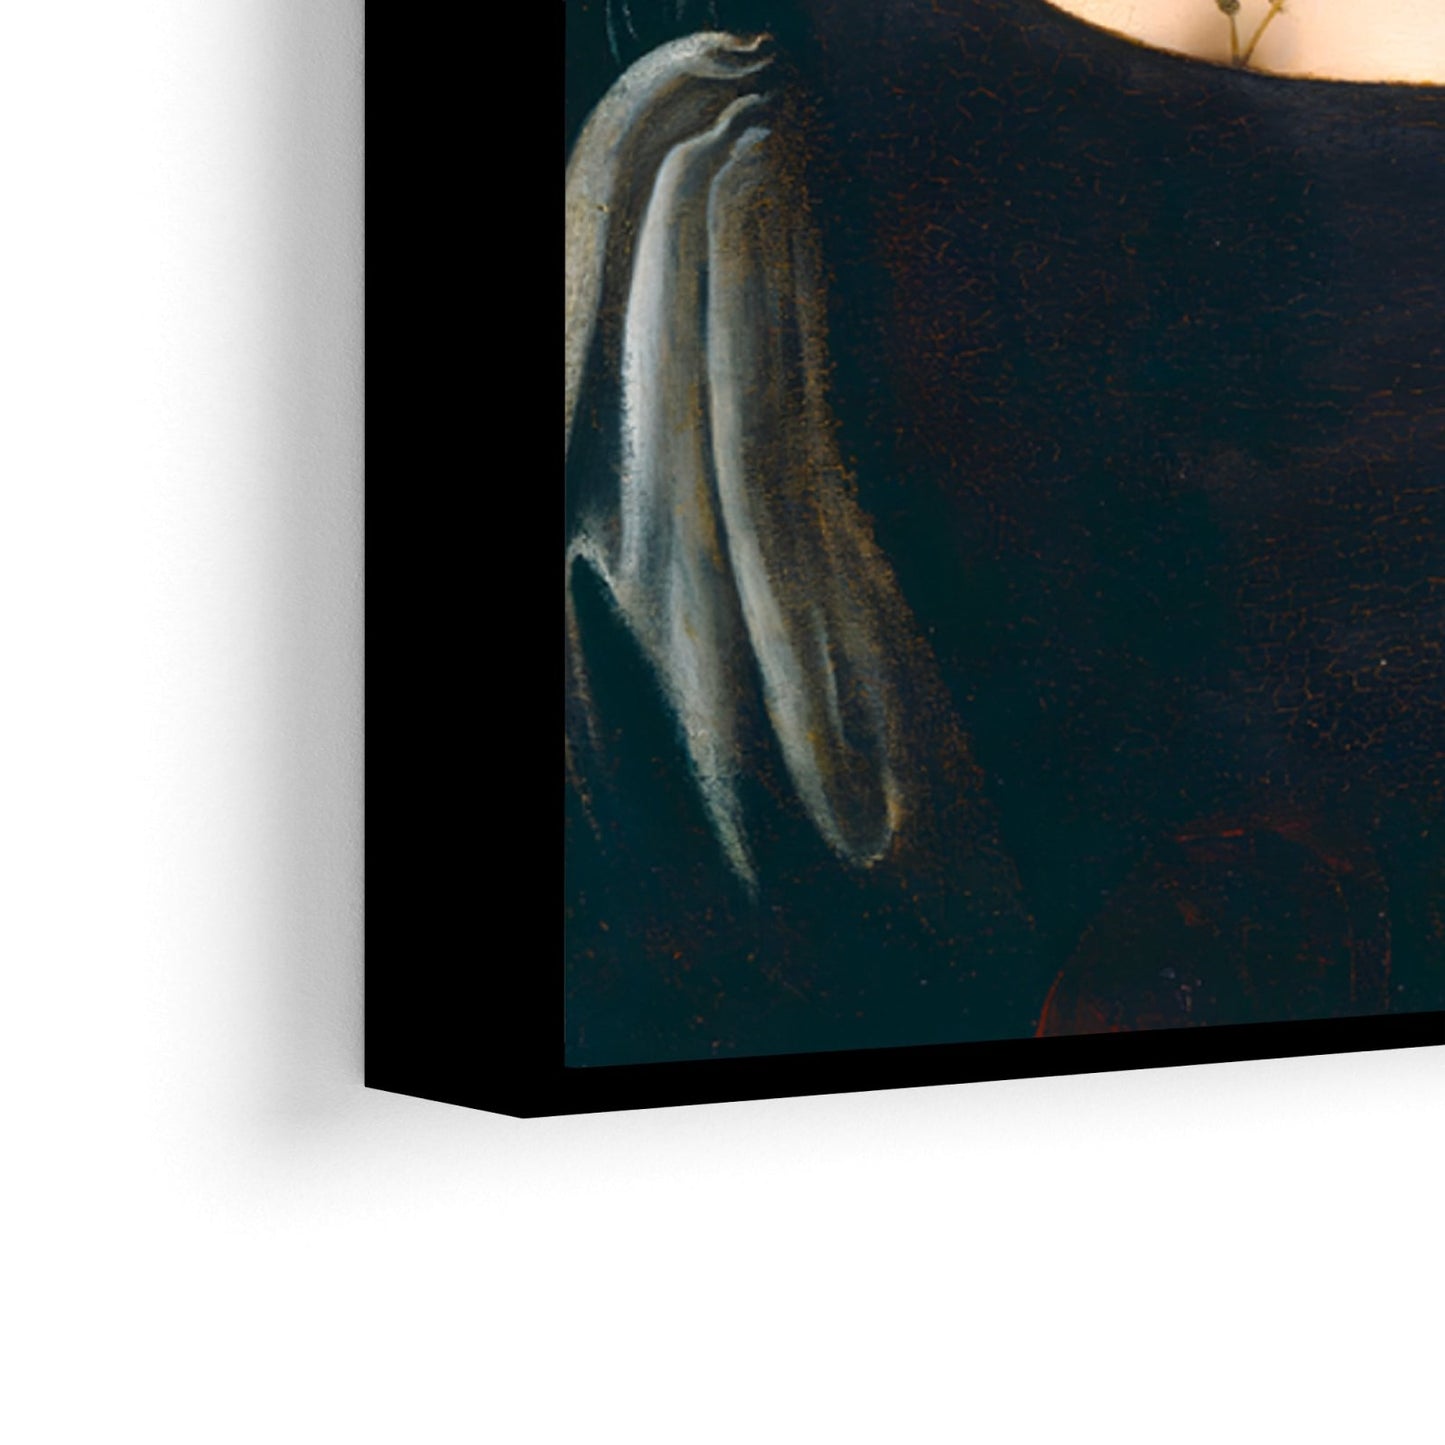 Portret mlade žene, Leonardo Da Vinci